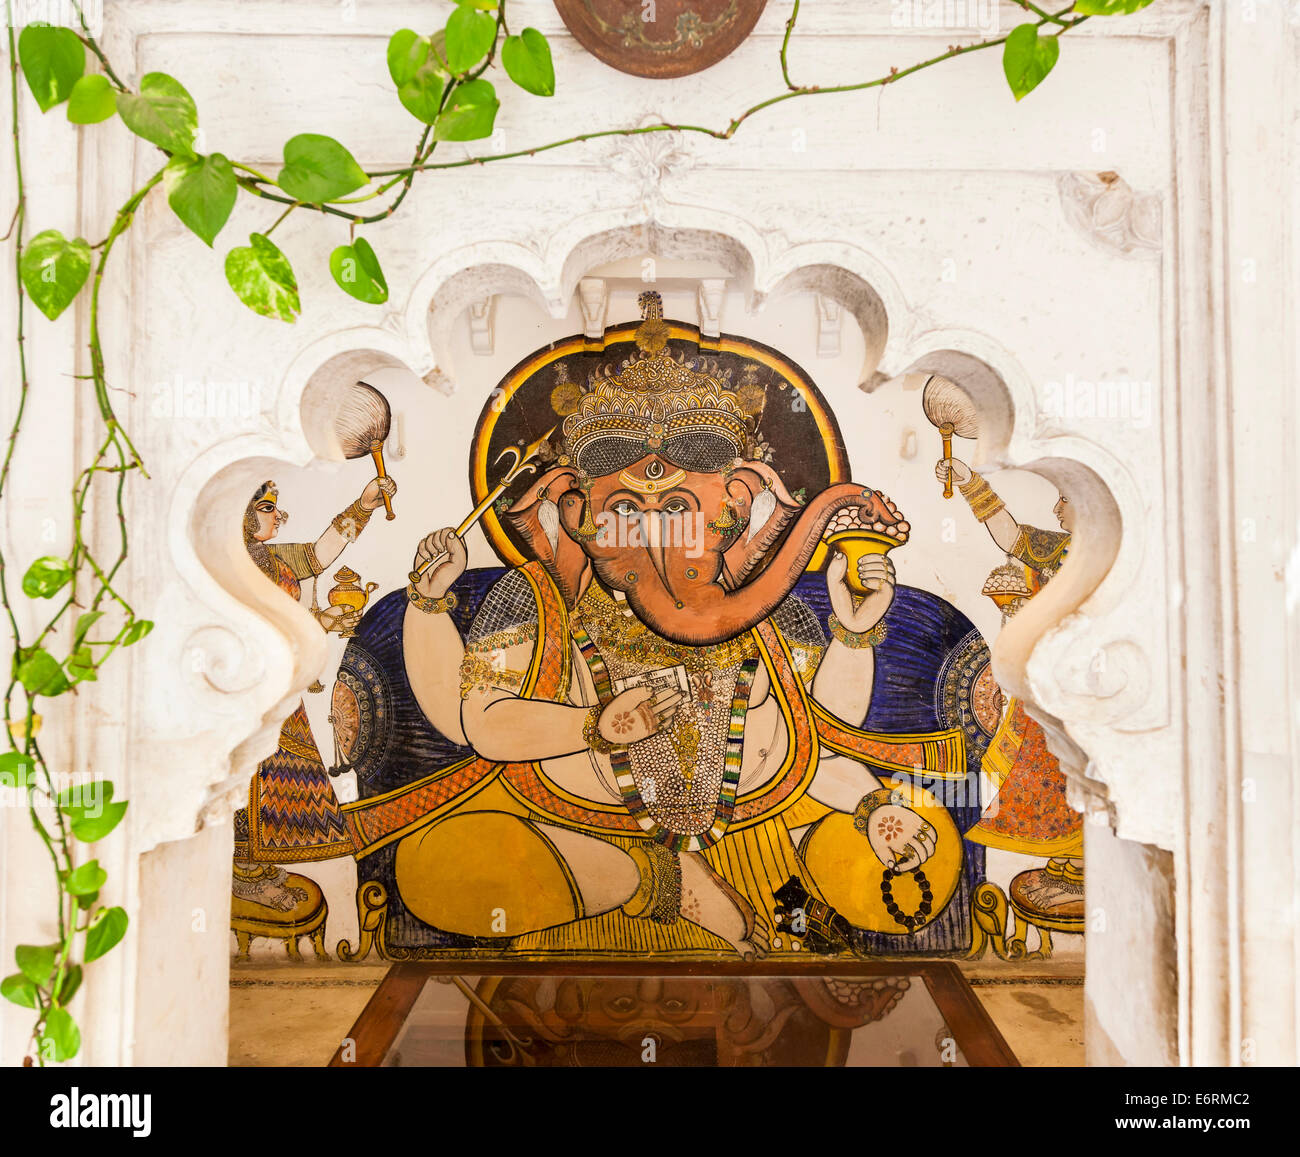 Style traditionnel peint à fresque colorée religieux de Ganesh, le dieu Hindou à la tête d'éléphant, à Deogarh Mahal Hotel, Deogarh, Rajasthan, Inde Banque D'Images